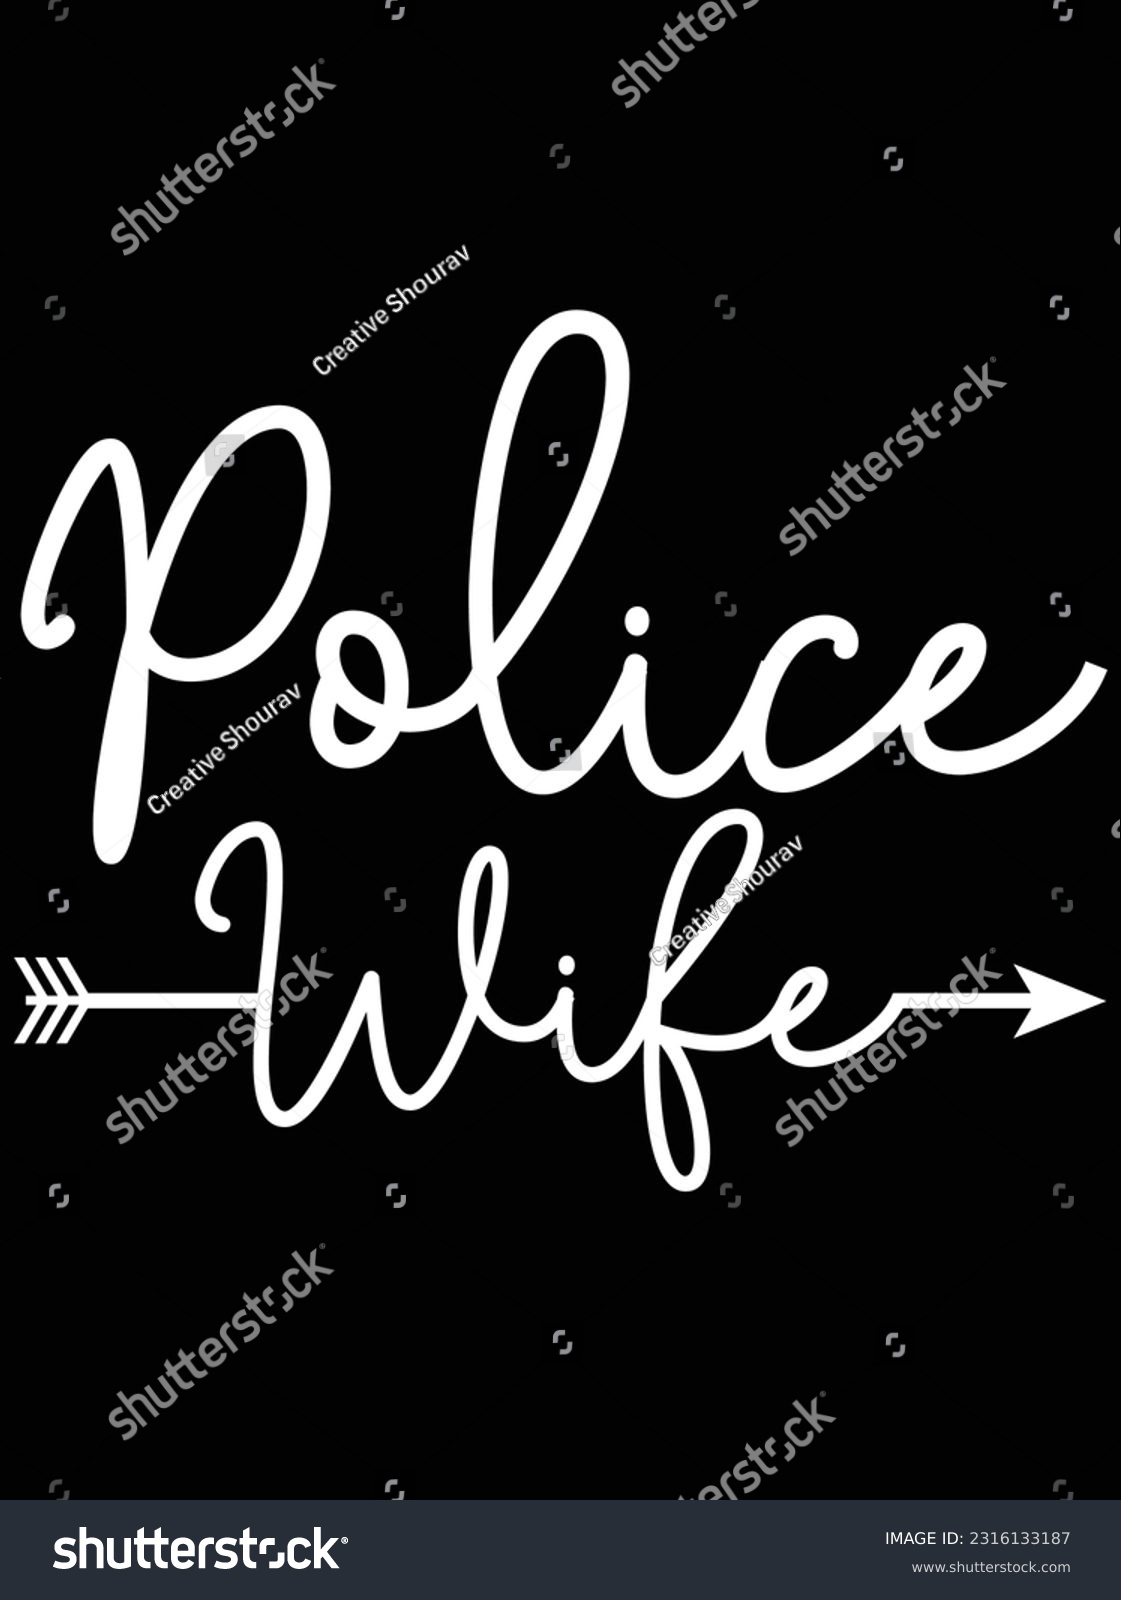 SVG of Police wife vector art design, eps file. design file for t-shirt. SVG, EPS cuttable design file svg